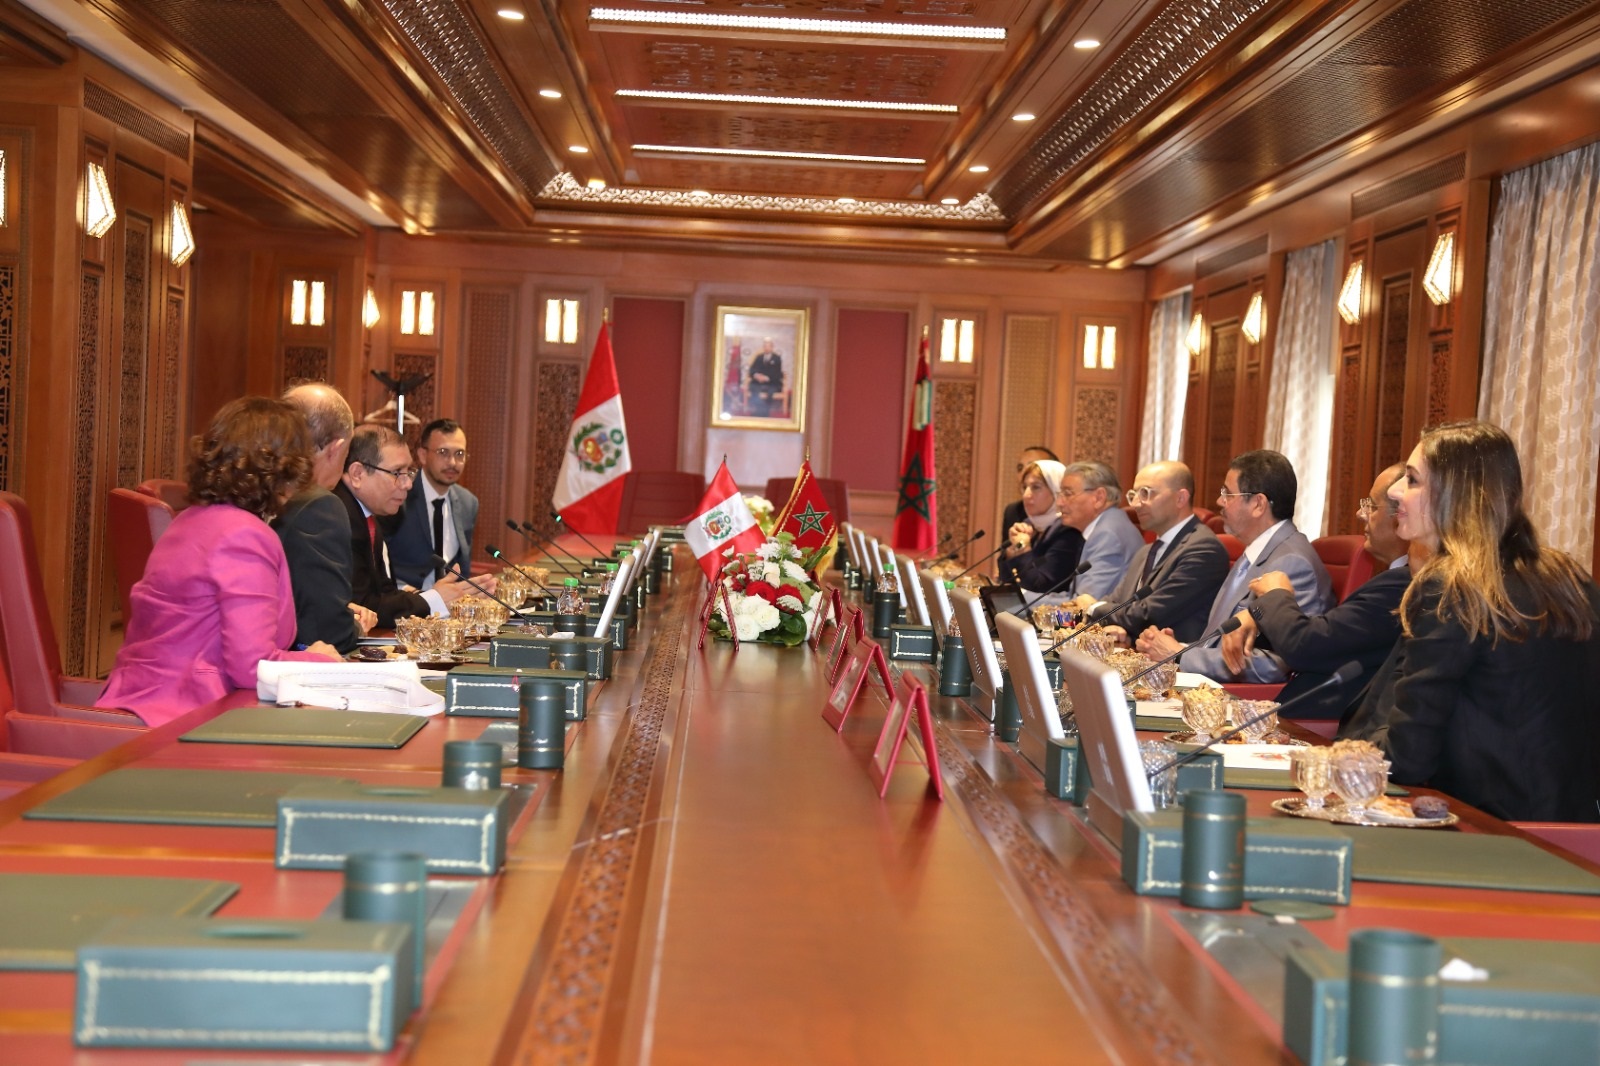 توقيع مذكرة تفاهم بين المجلس الأعلى للسلطة القضائية بالمملكة المغربية والسلطة القضائية بجمهورية البيرو